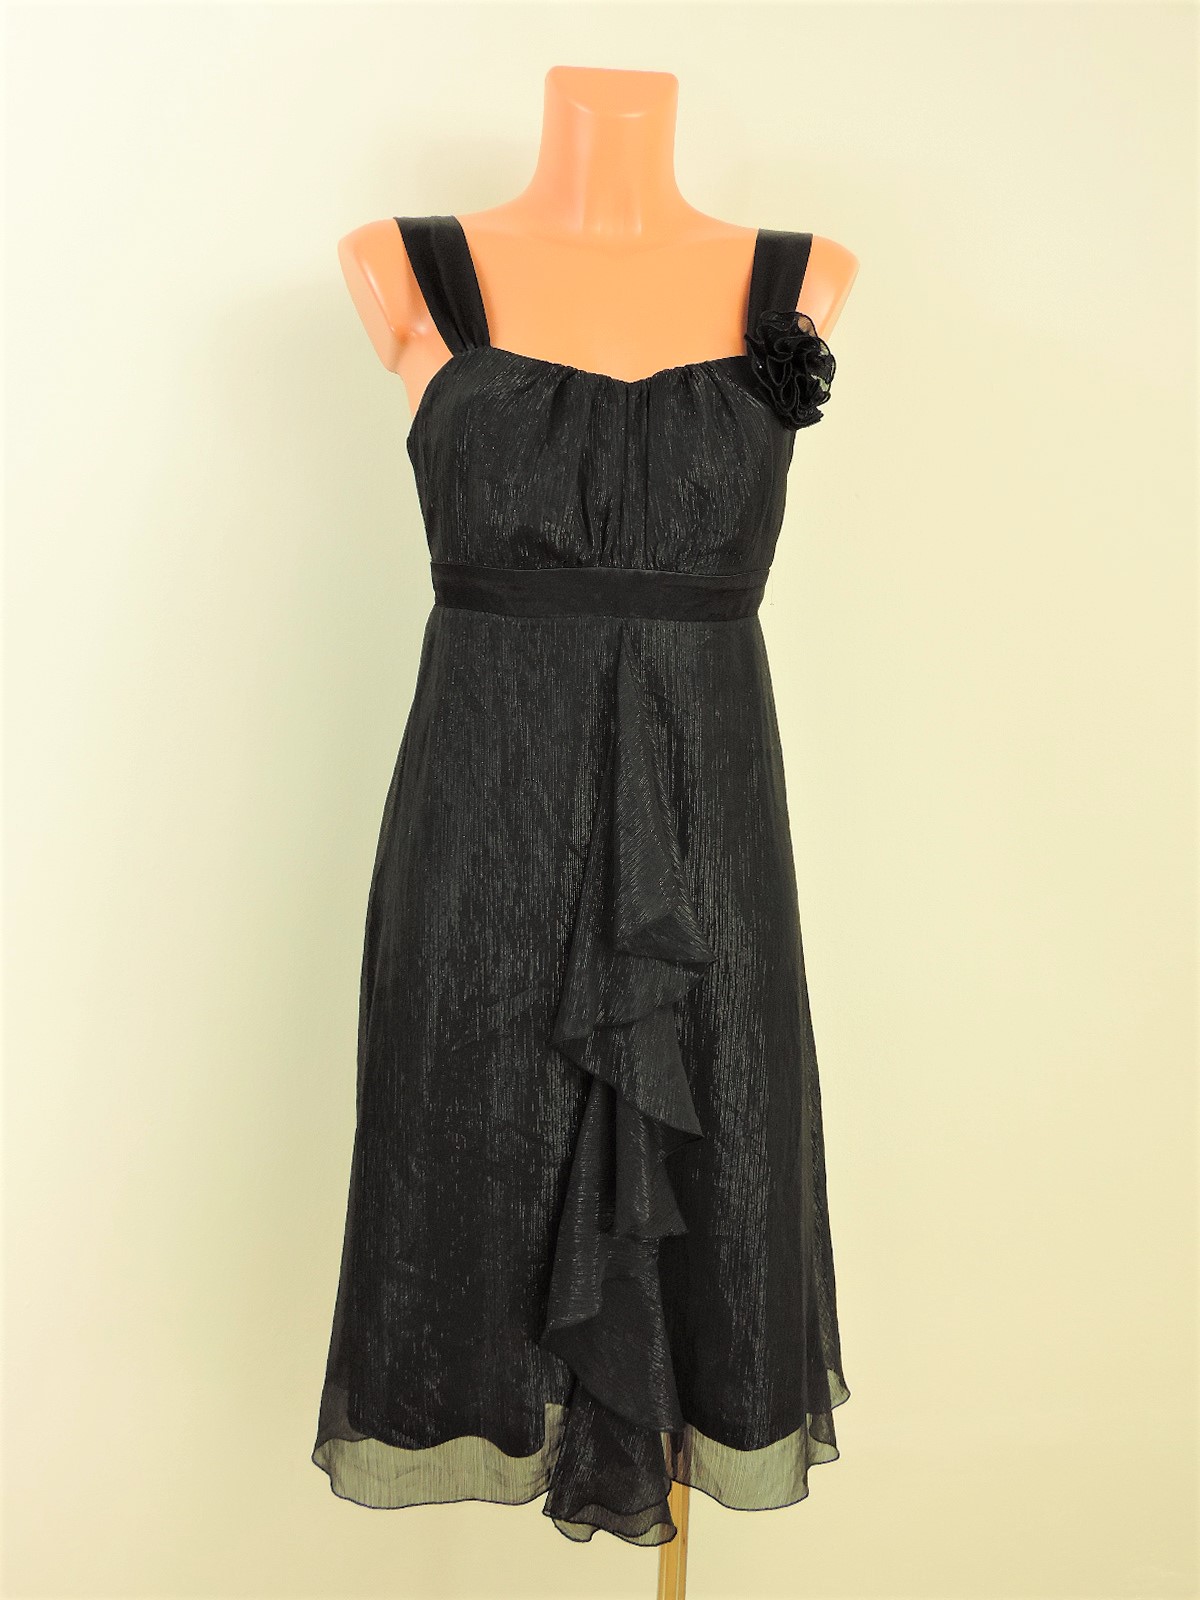 Společenské šaty s vázačkou - Second hand online - Fashion for Ladies